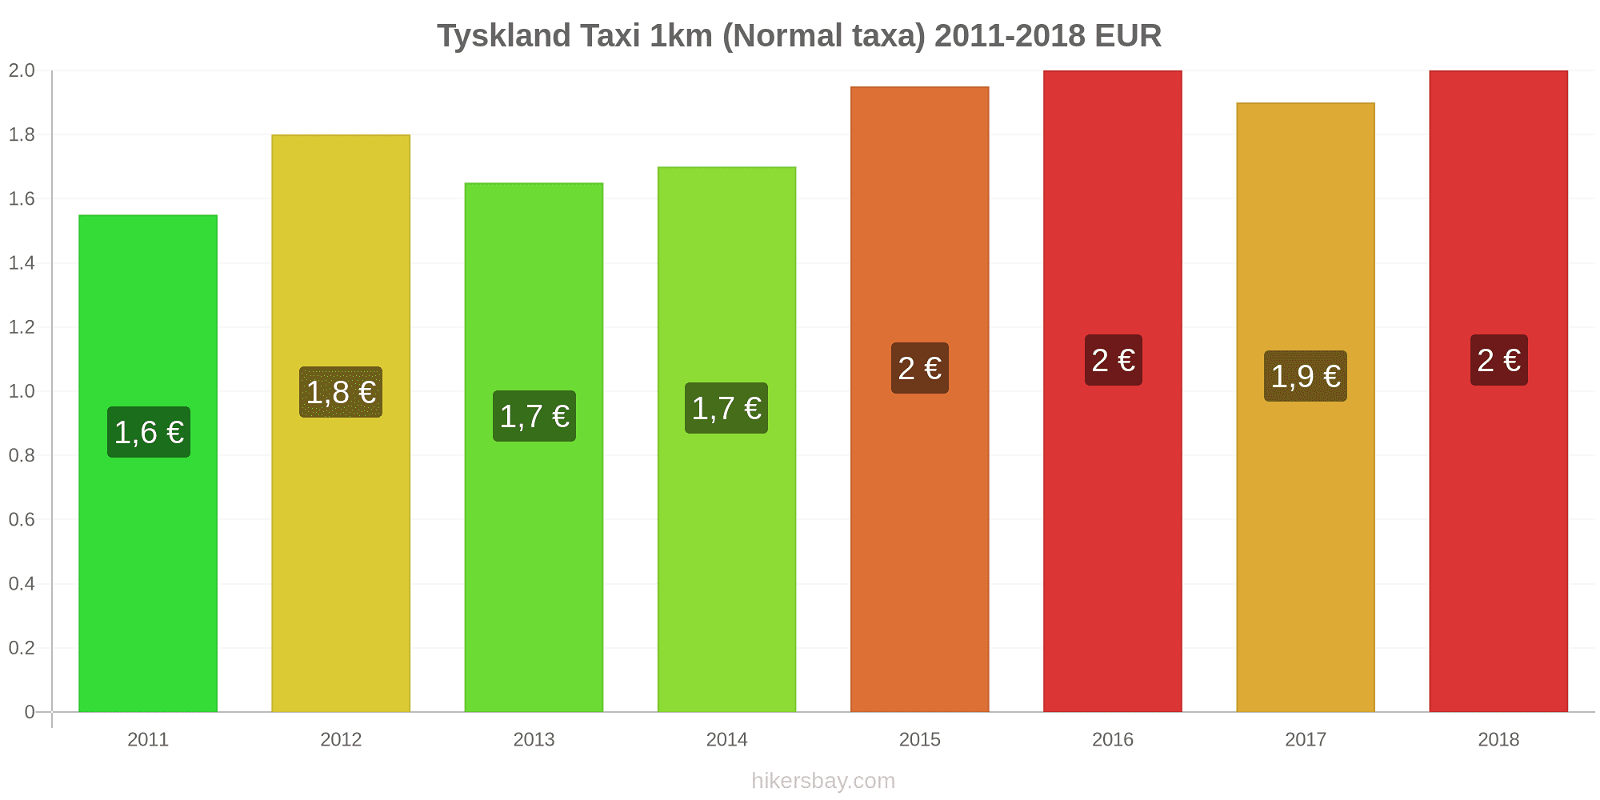 Tyskland prisändringar Taxi 1km (Normal taxa) hikersbay.com